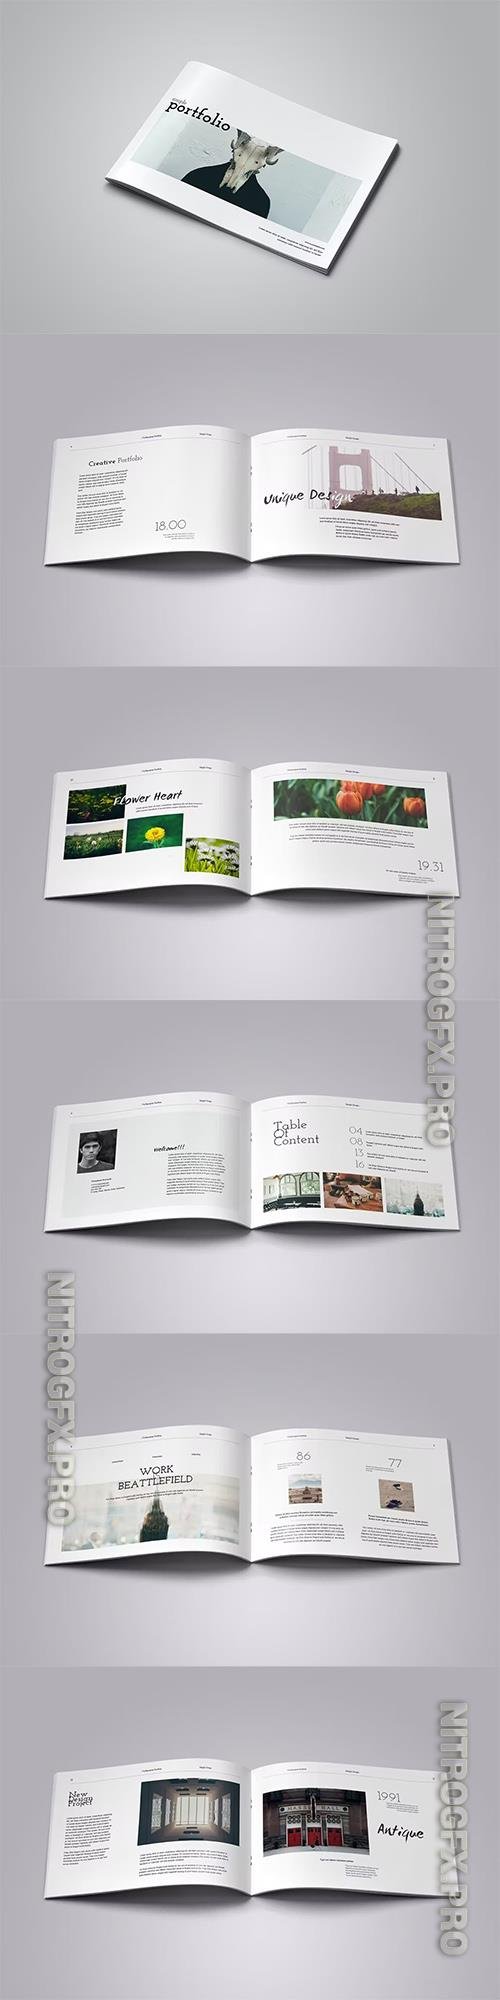 Simportf - Brochure